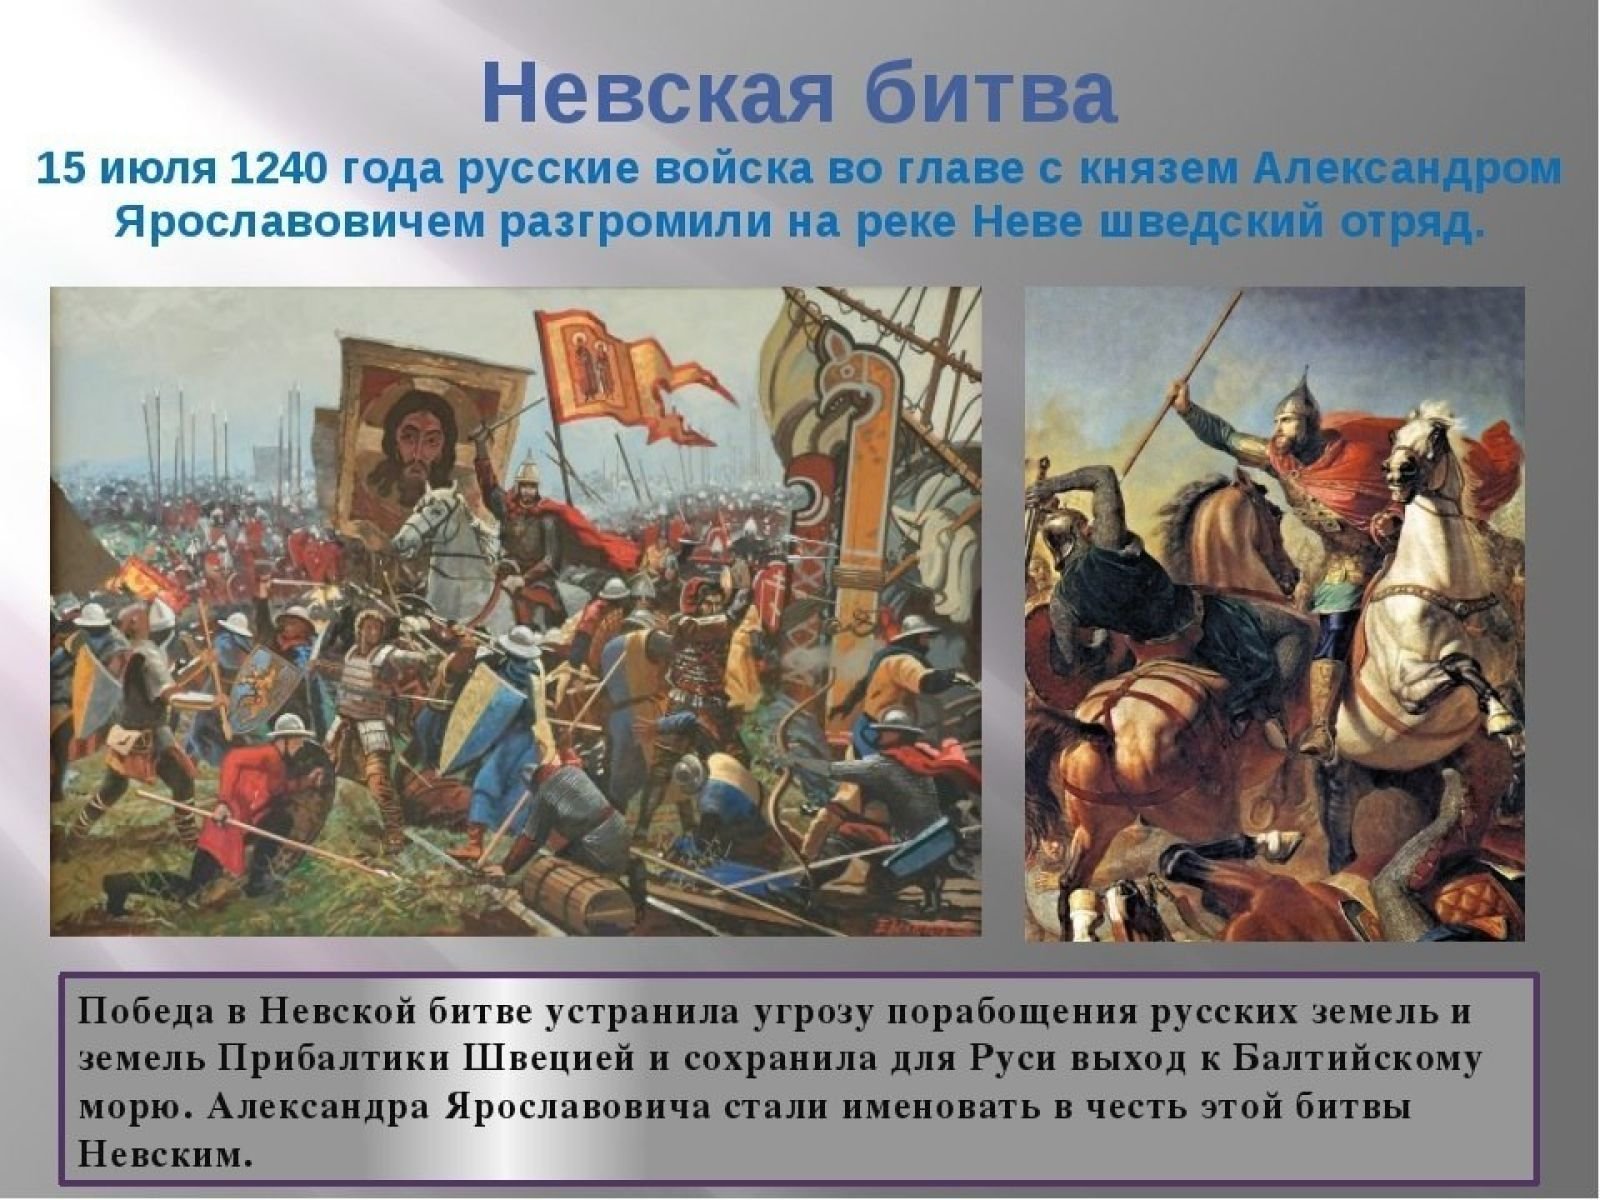 Кто участвовал в невской битве. 15 Июля 1240 г. русские войска разбили Шведов в Невской битве. 15 Июля 1240 года состоялась Невская битва..